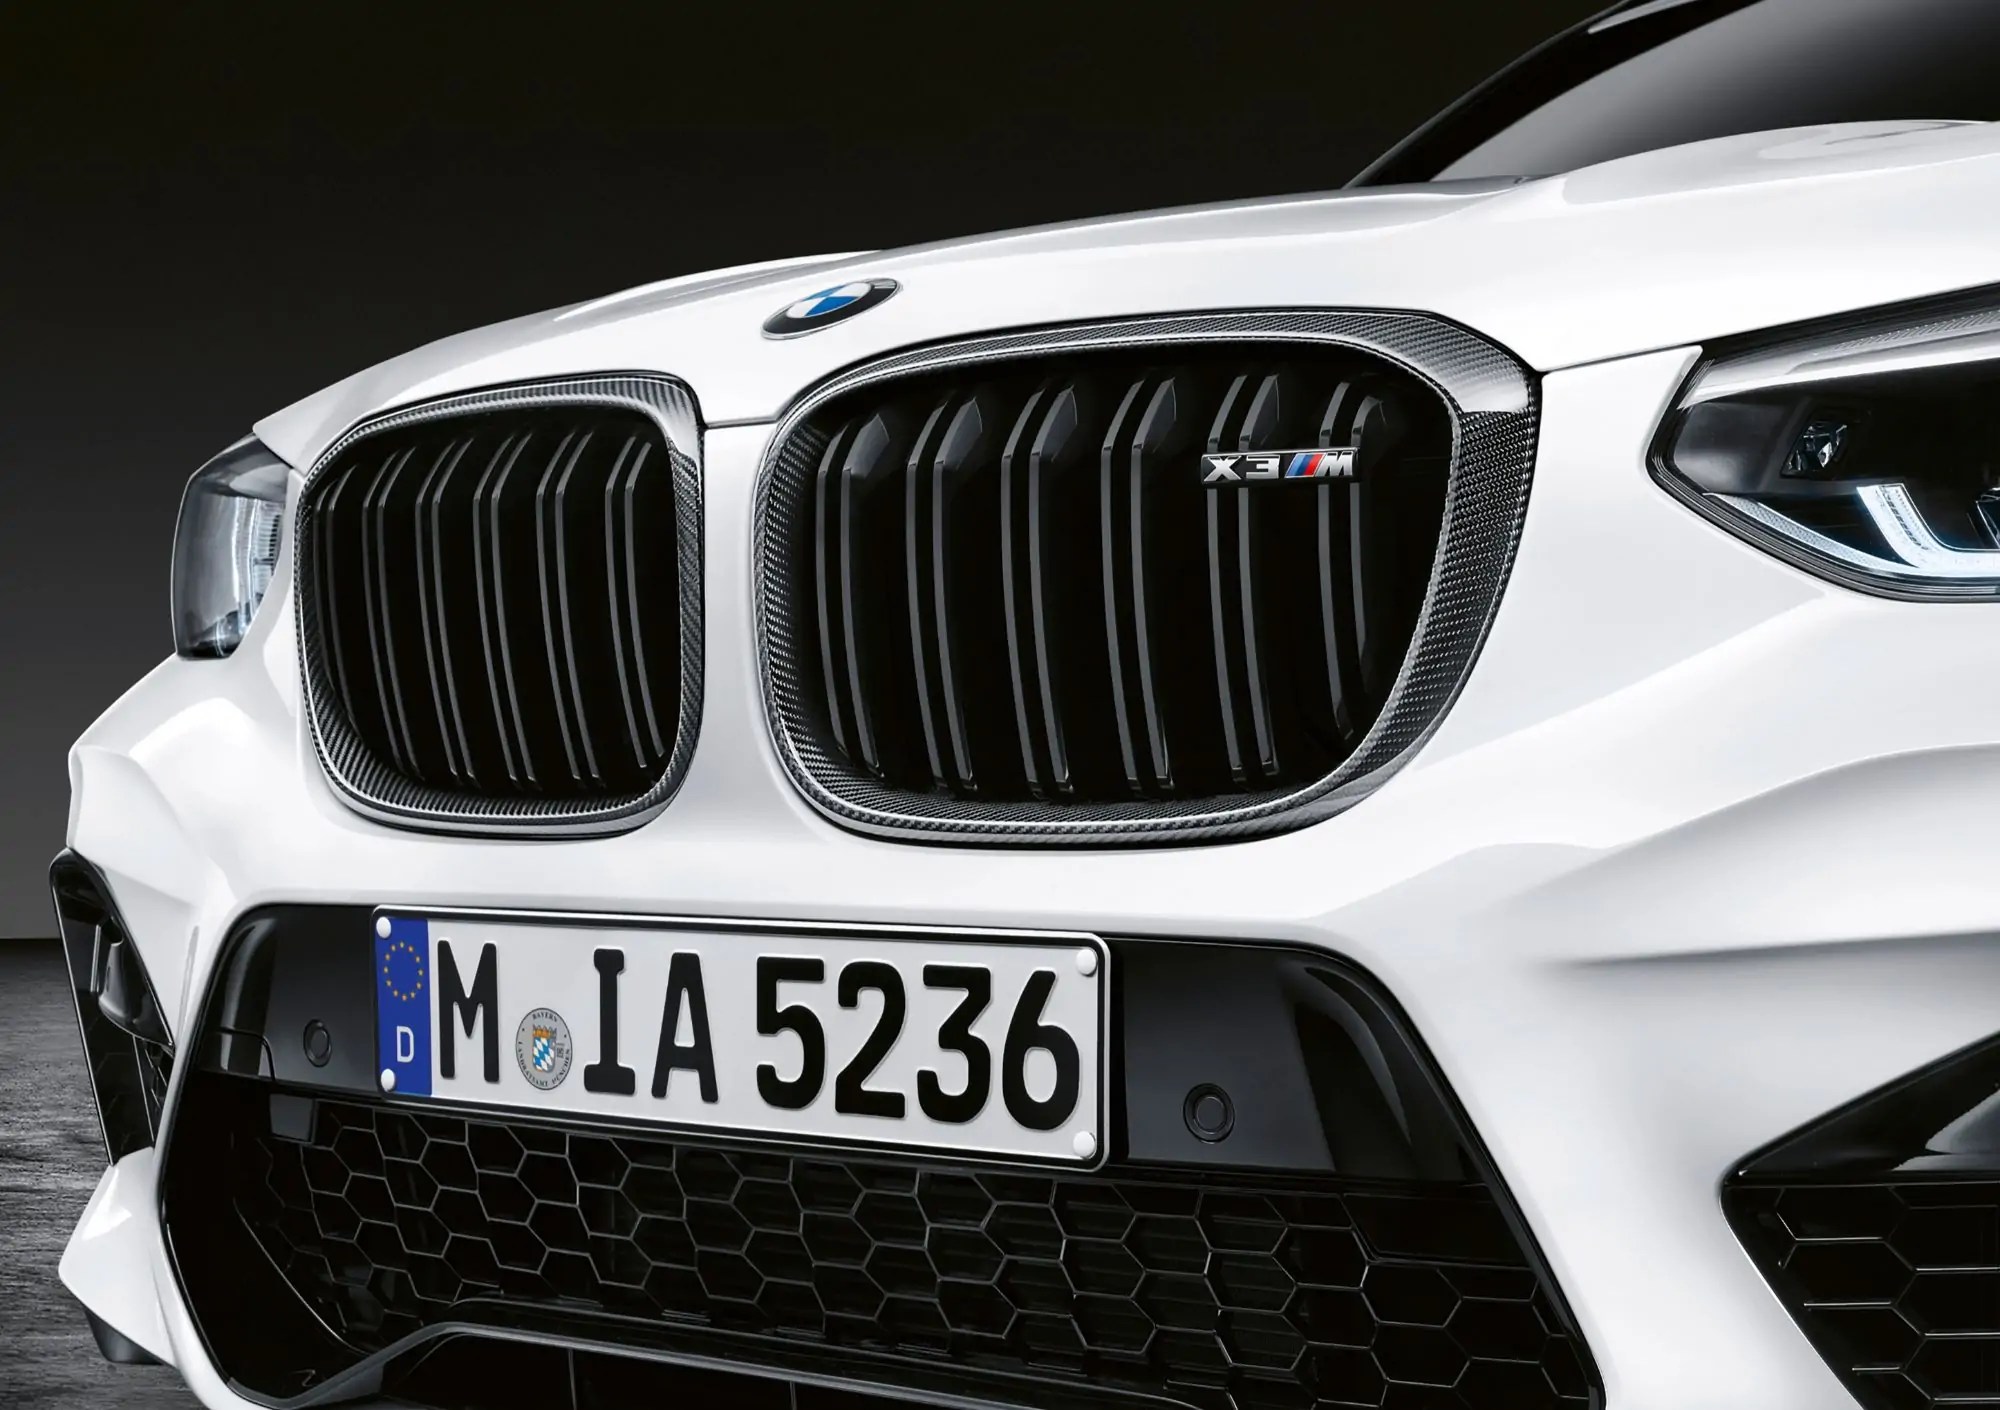 حزم اكسسوارات M Performance جديدة لـ BMW X3 و X4